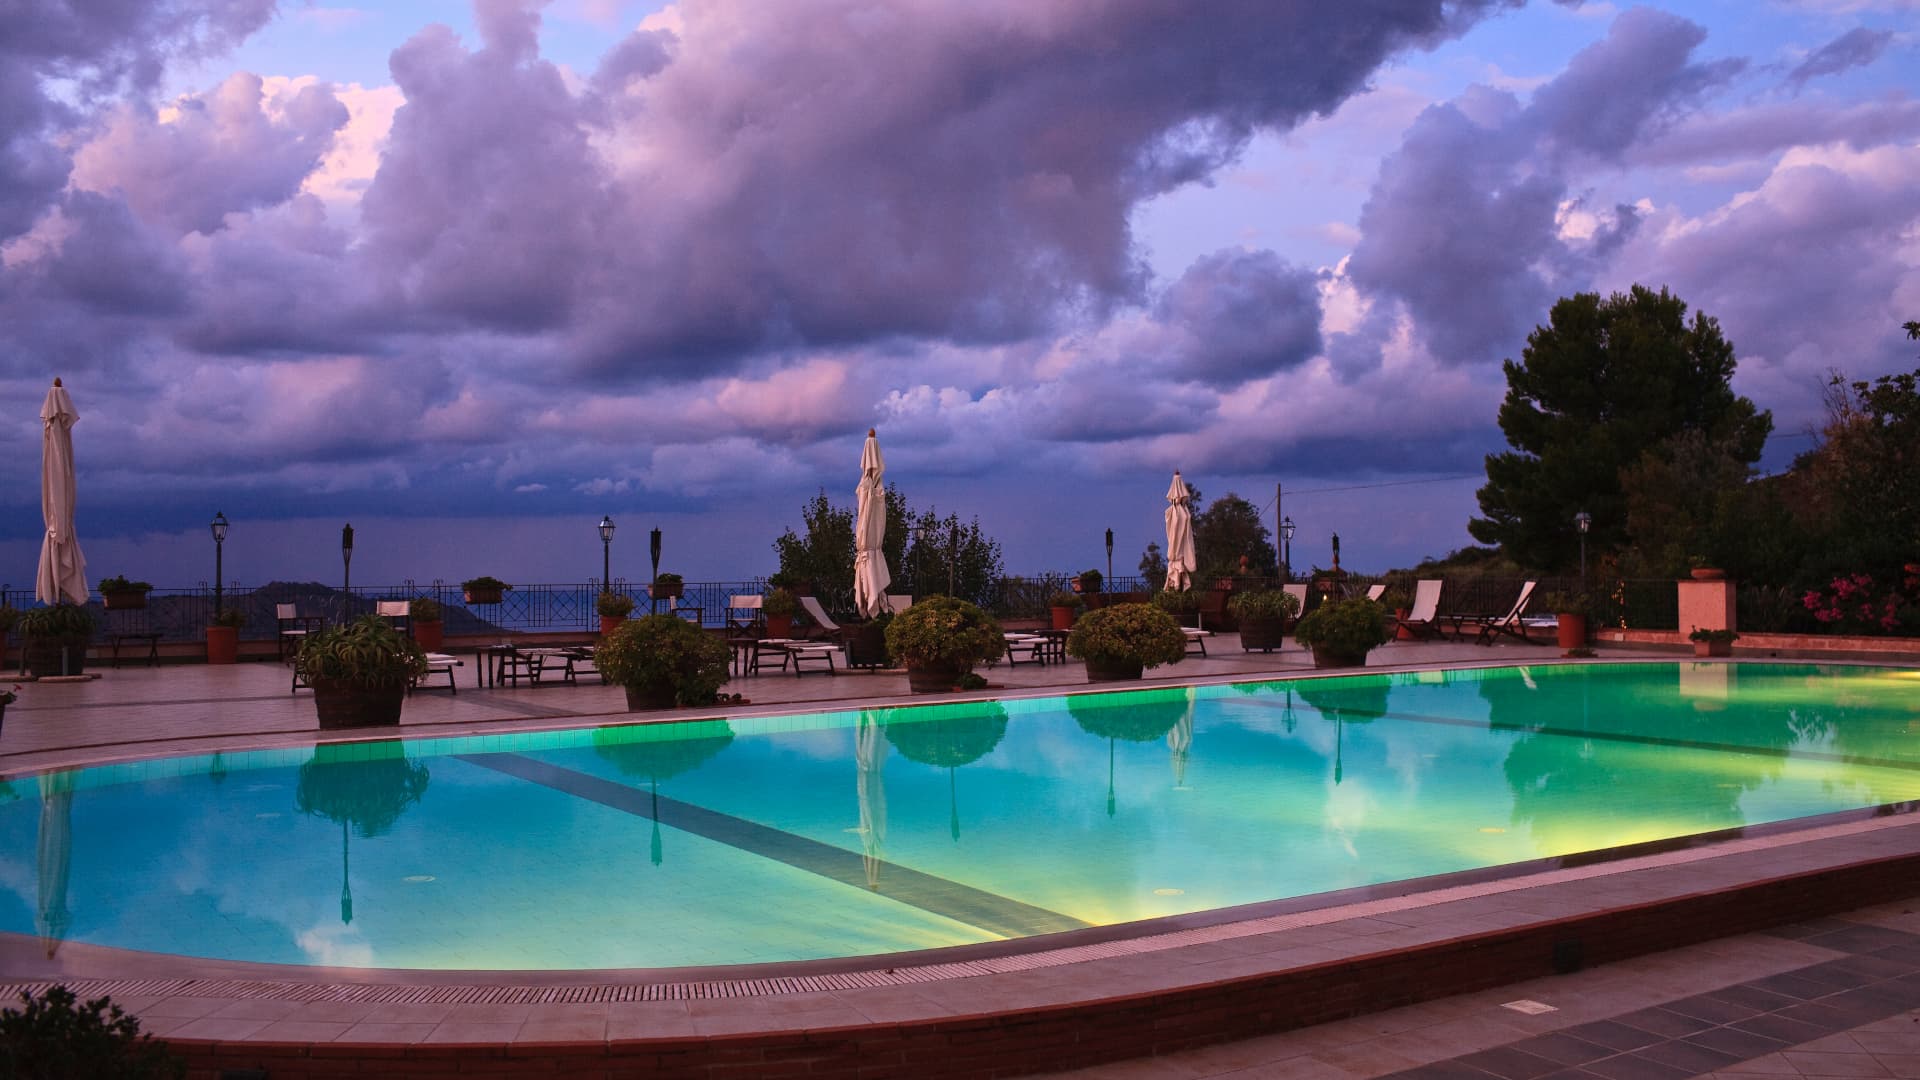 Pool by night, Abbazia Santa Anastasia